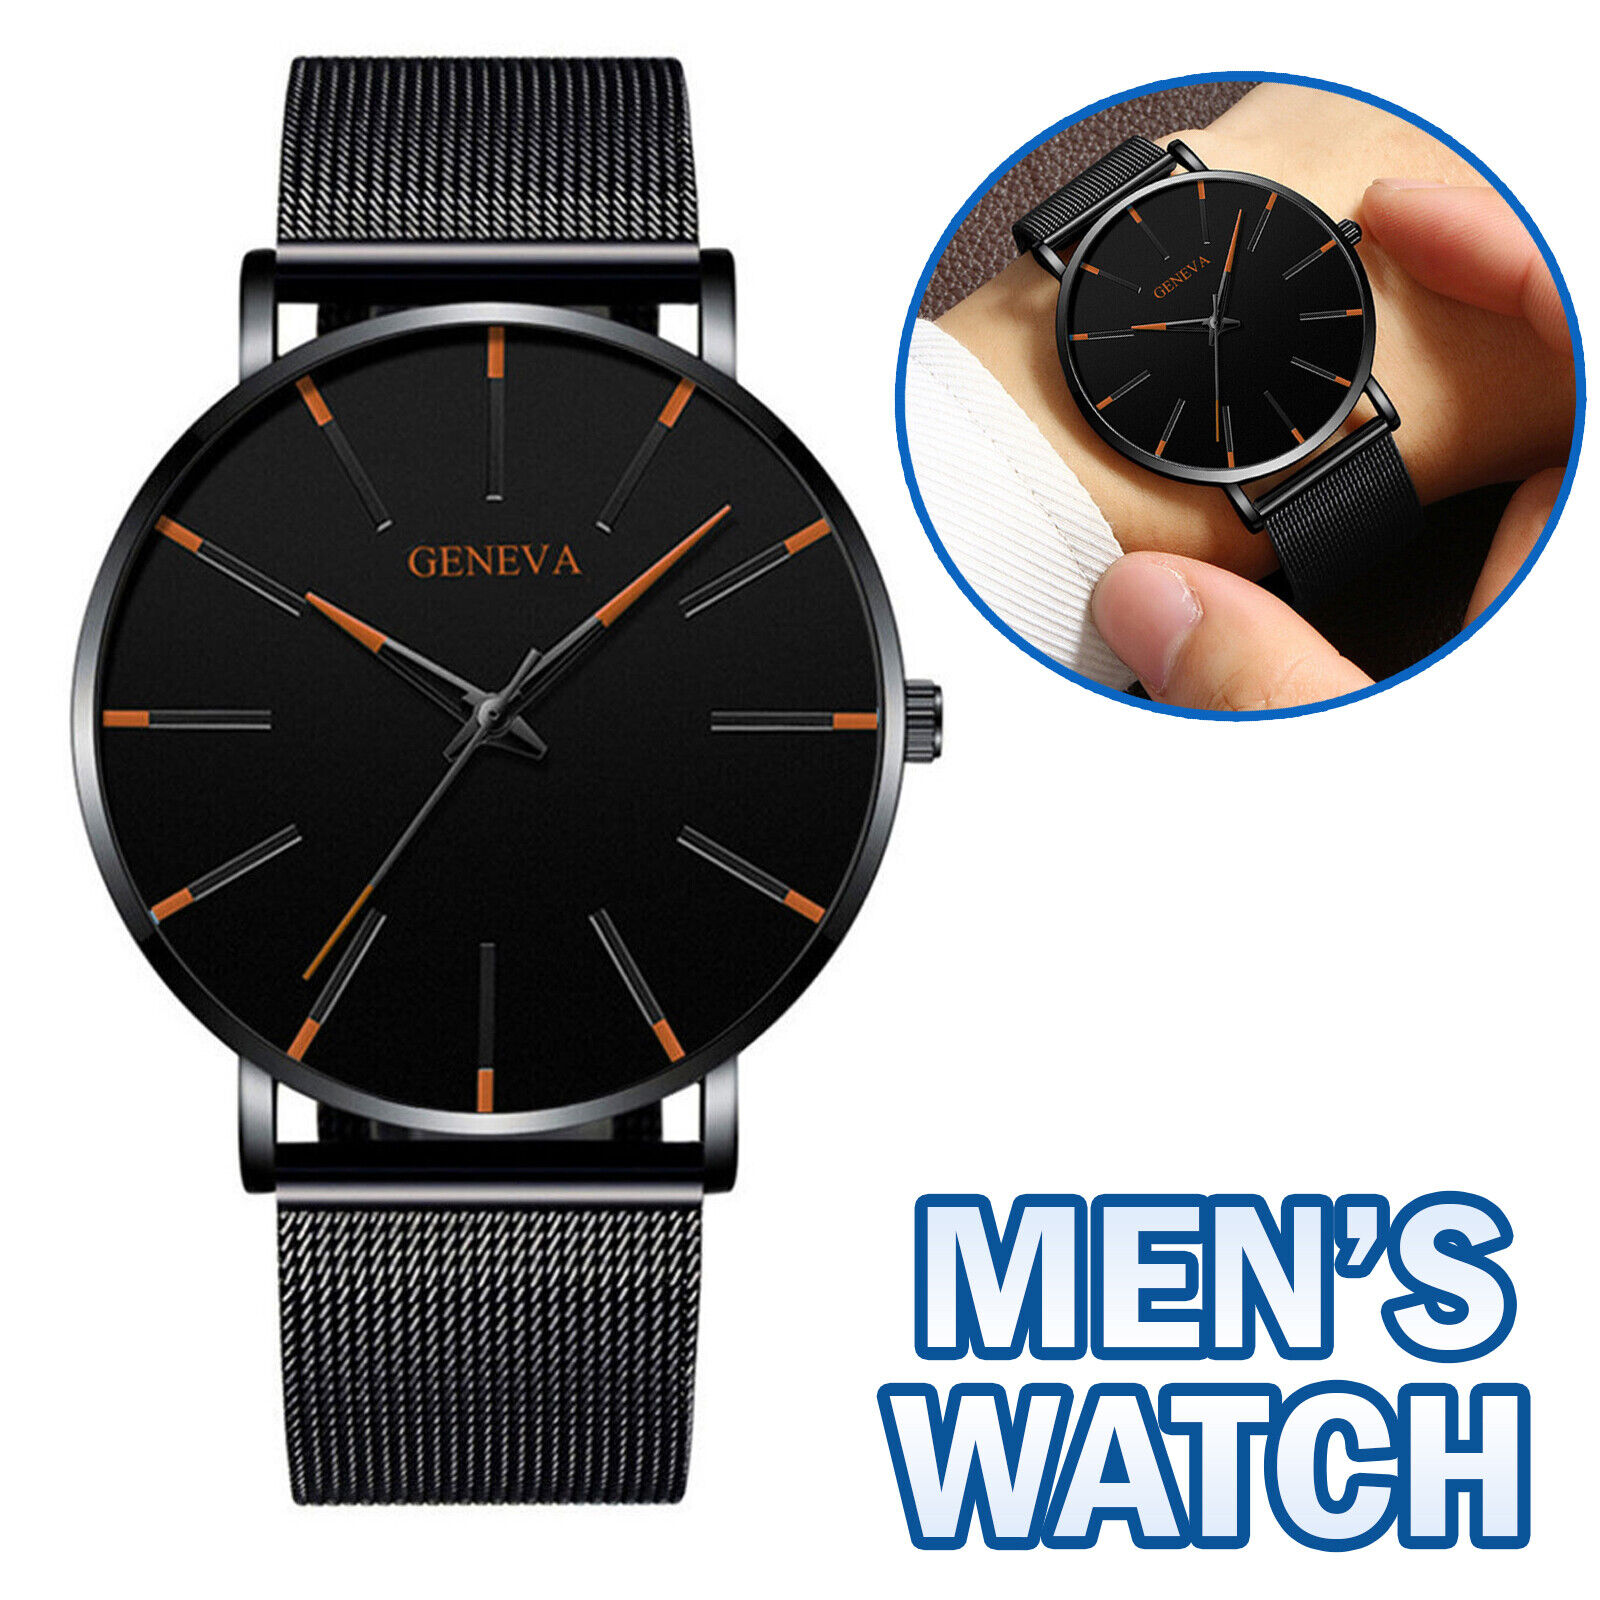 Waterproof Men's Watch Stainless Steel Quartz Analog Wristwatches Sport Fashion